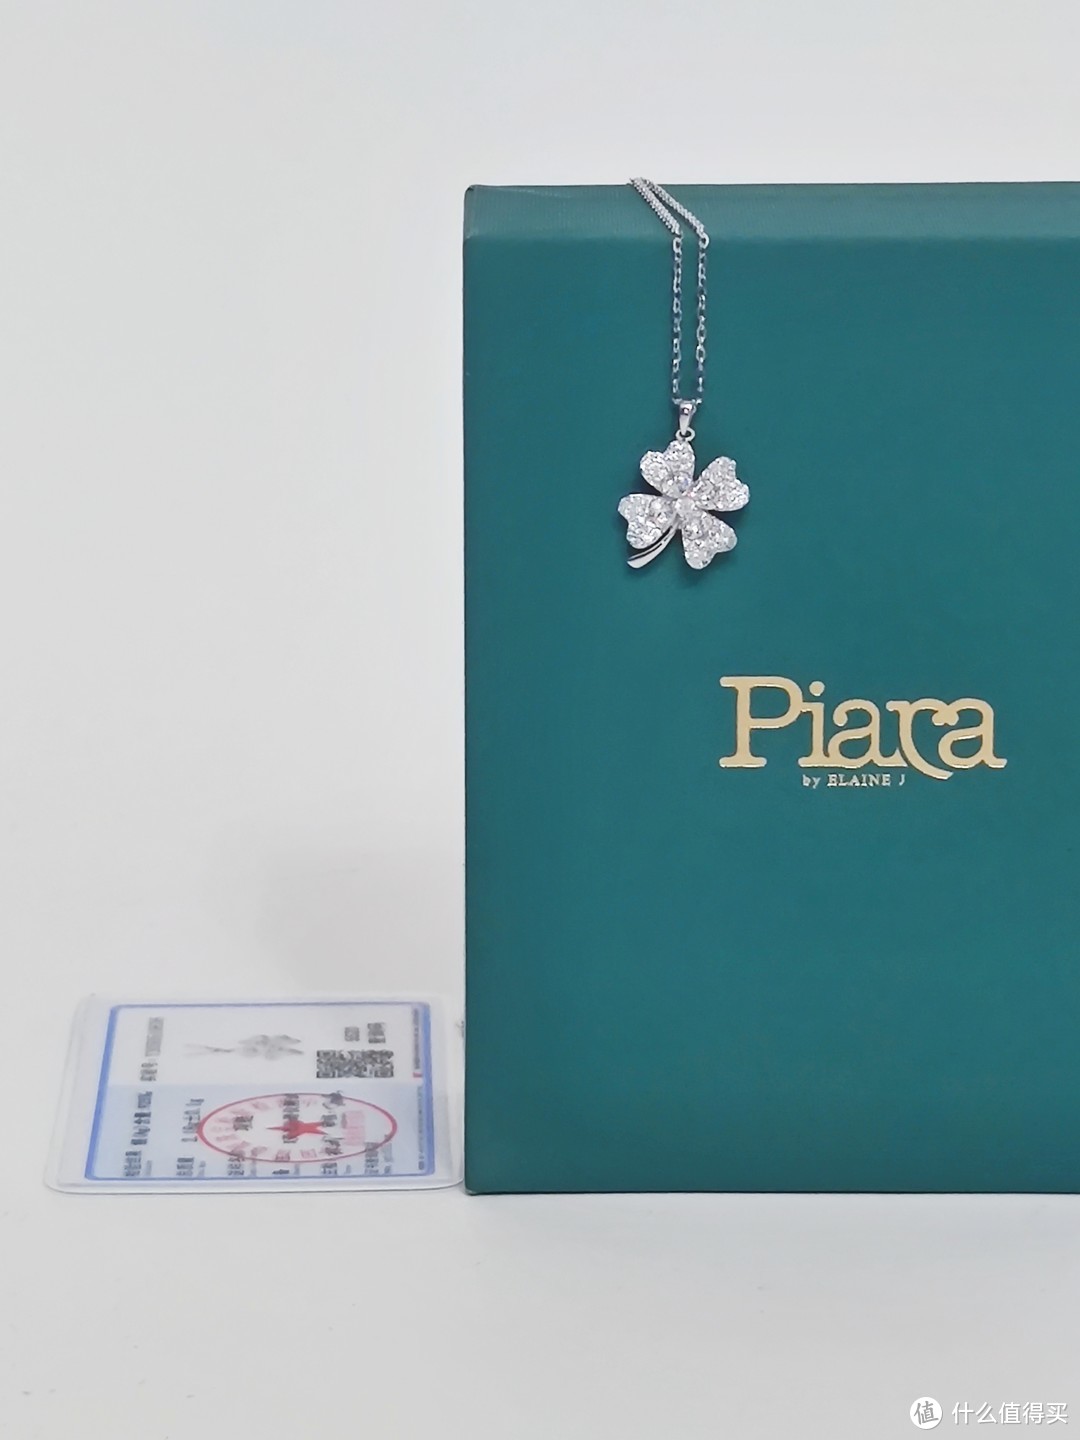 Piara四叶草项链——幸运与美丽的象征